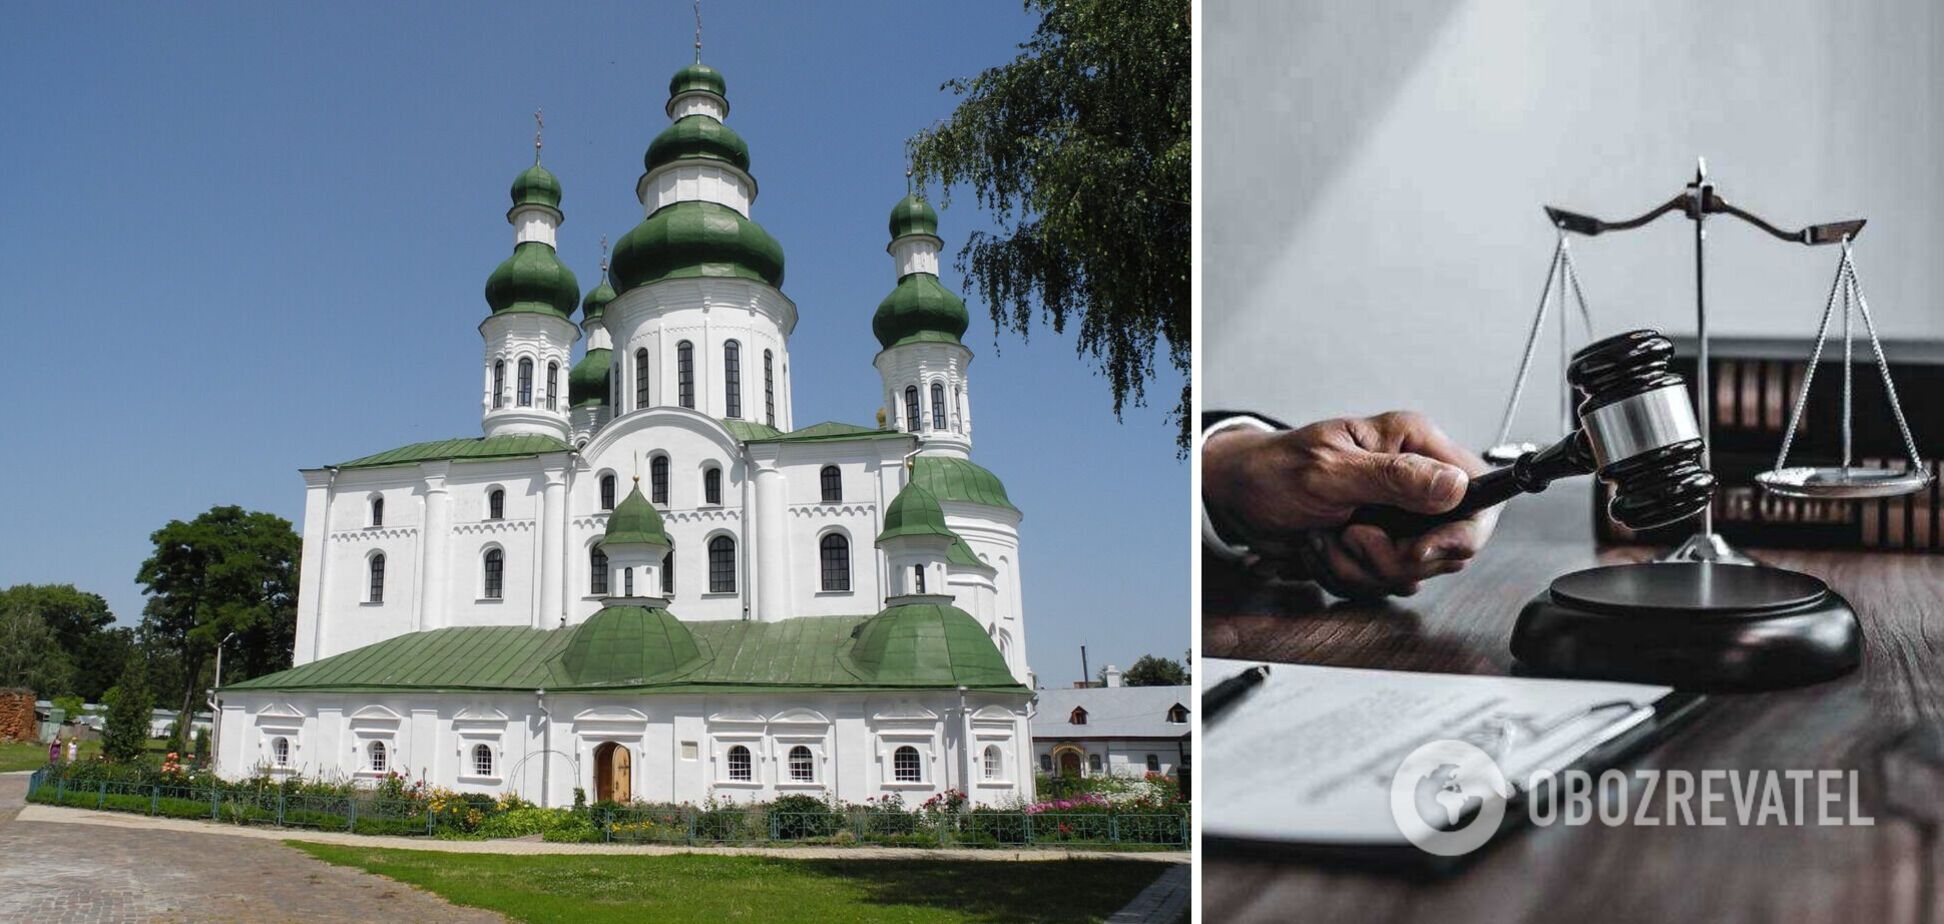 УПЦ МП незаконно пользуется Елецким монастырем в Чернигове: решение суда